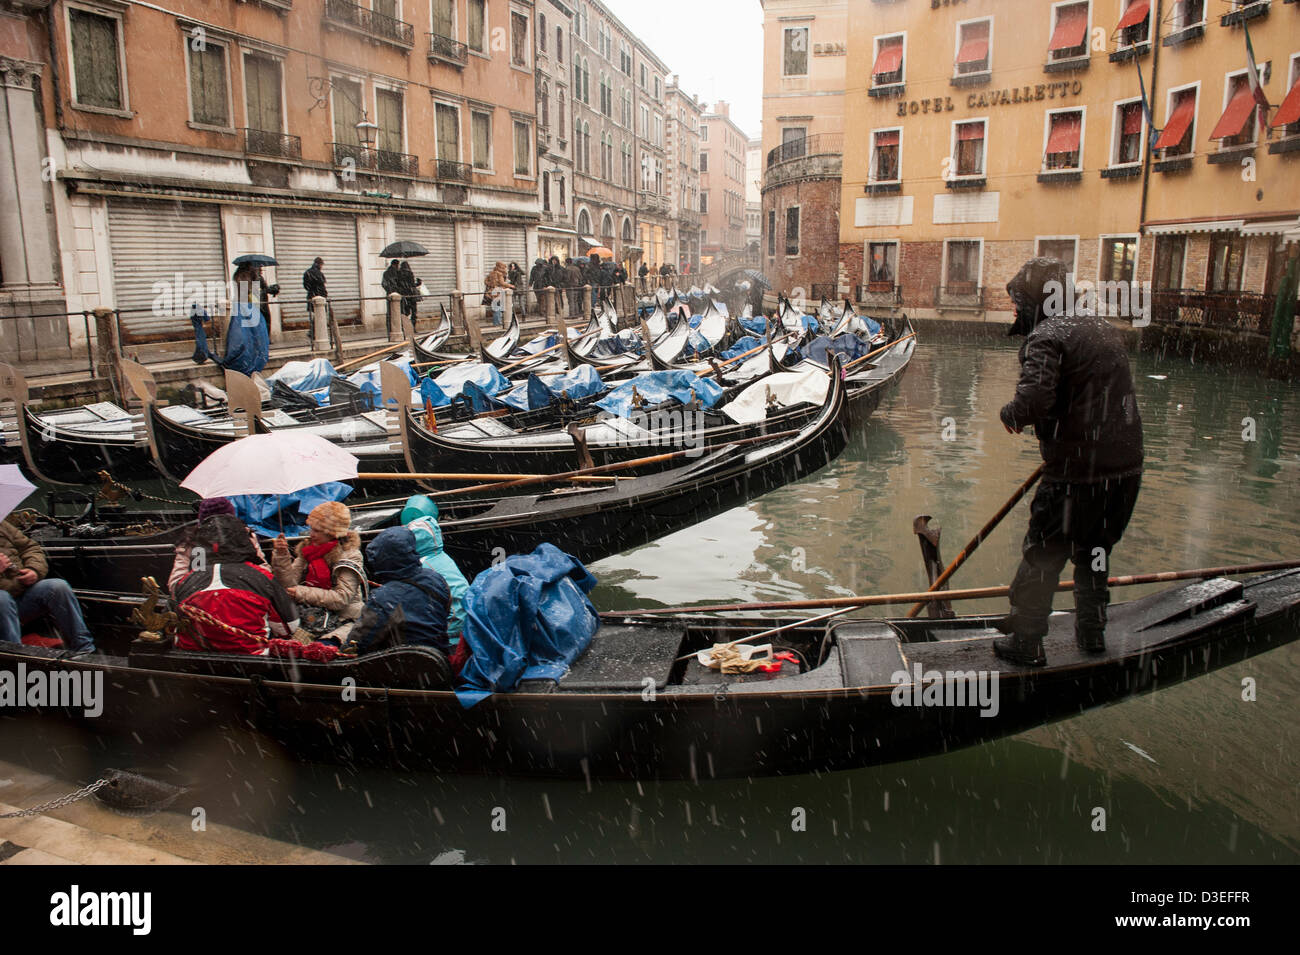 Un gondolier emmène les touristes pour une promenade en gondole au cours d'une forte chute de neige à Venise, Italie. Banque D'Images